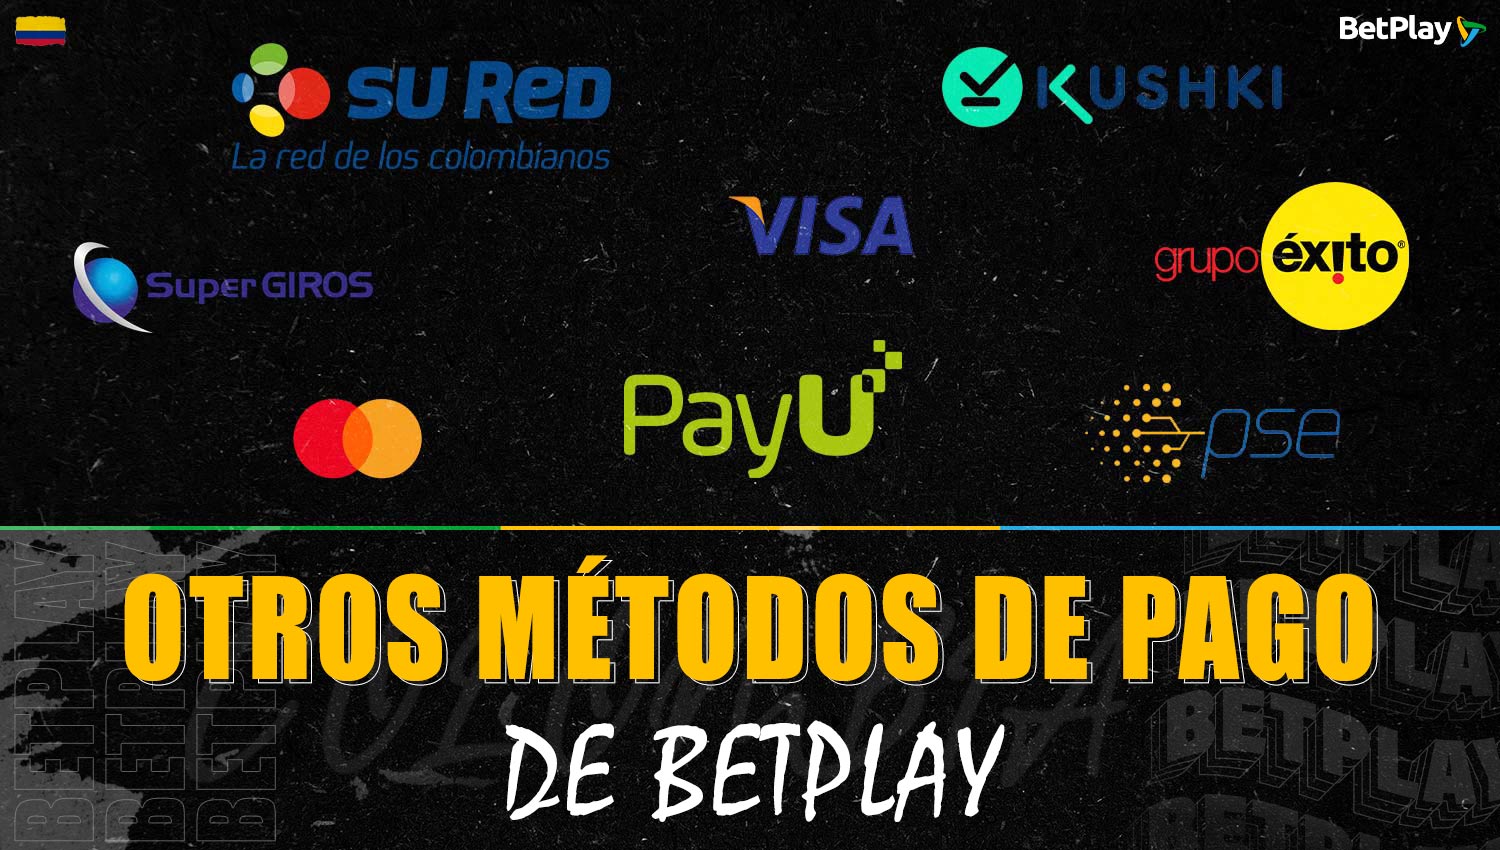 Betplay ofrece una gran variedad de formas de pago